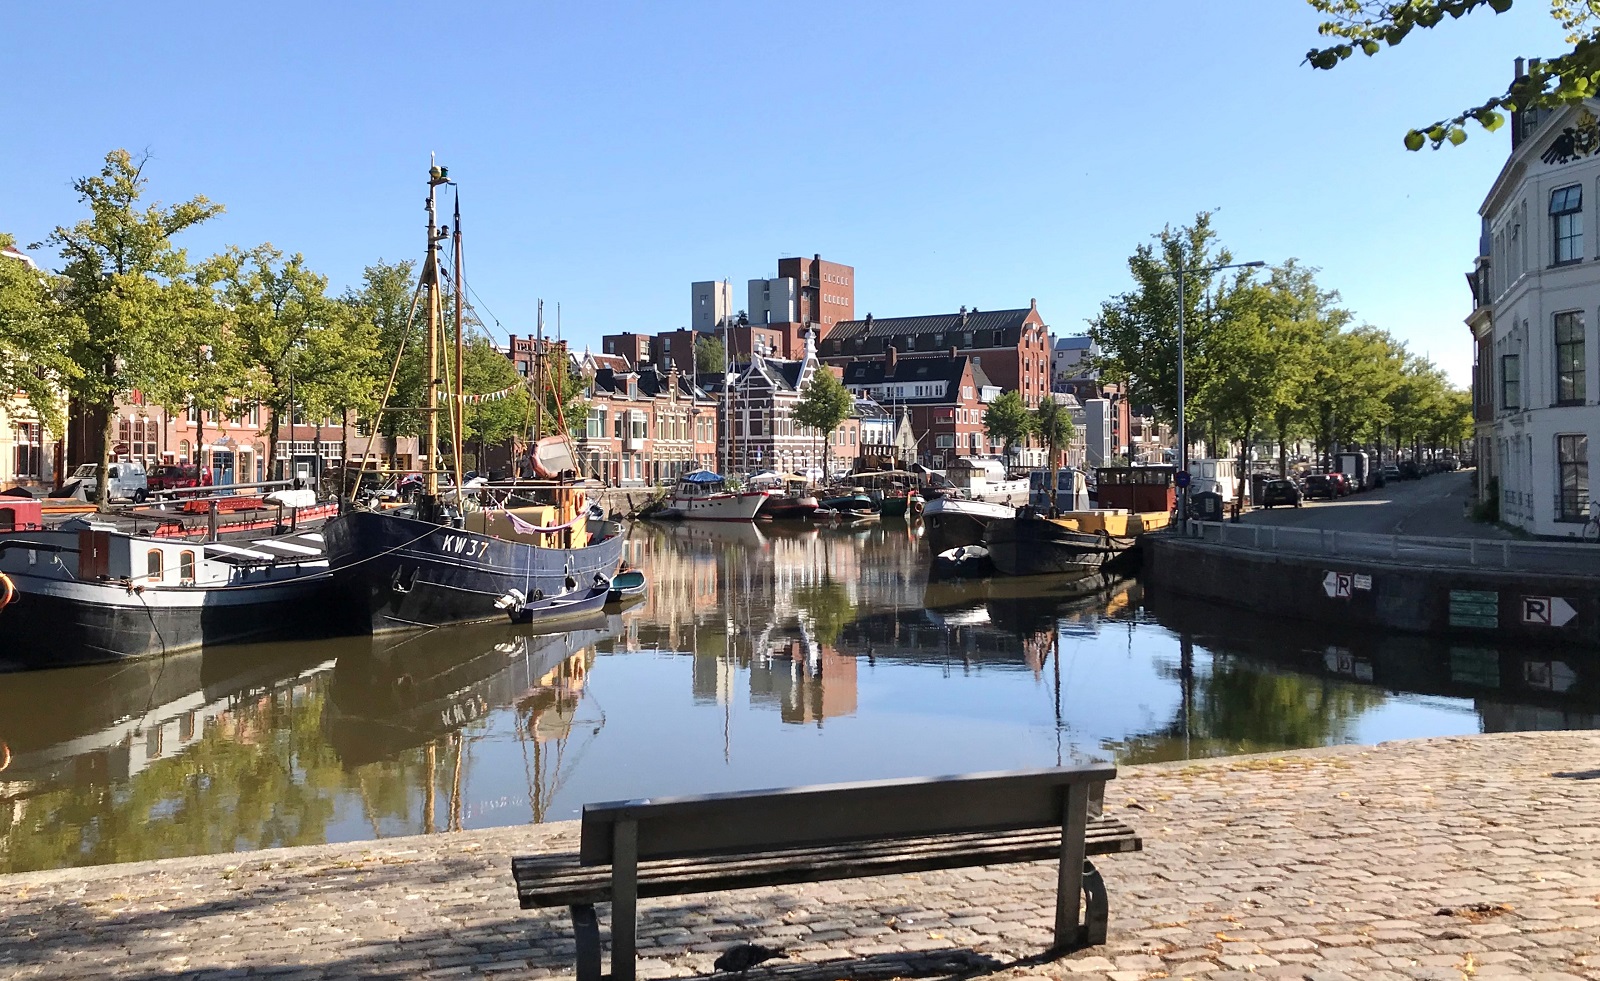 Oppositiepartijen willen vergunningen voor woonbootbewoners Noorderhaven